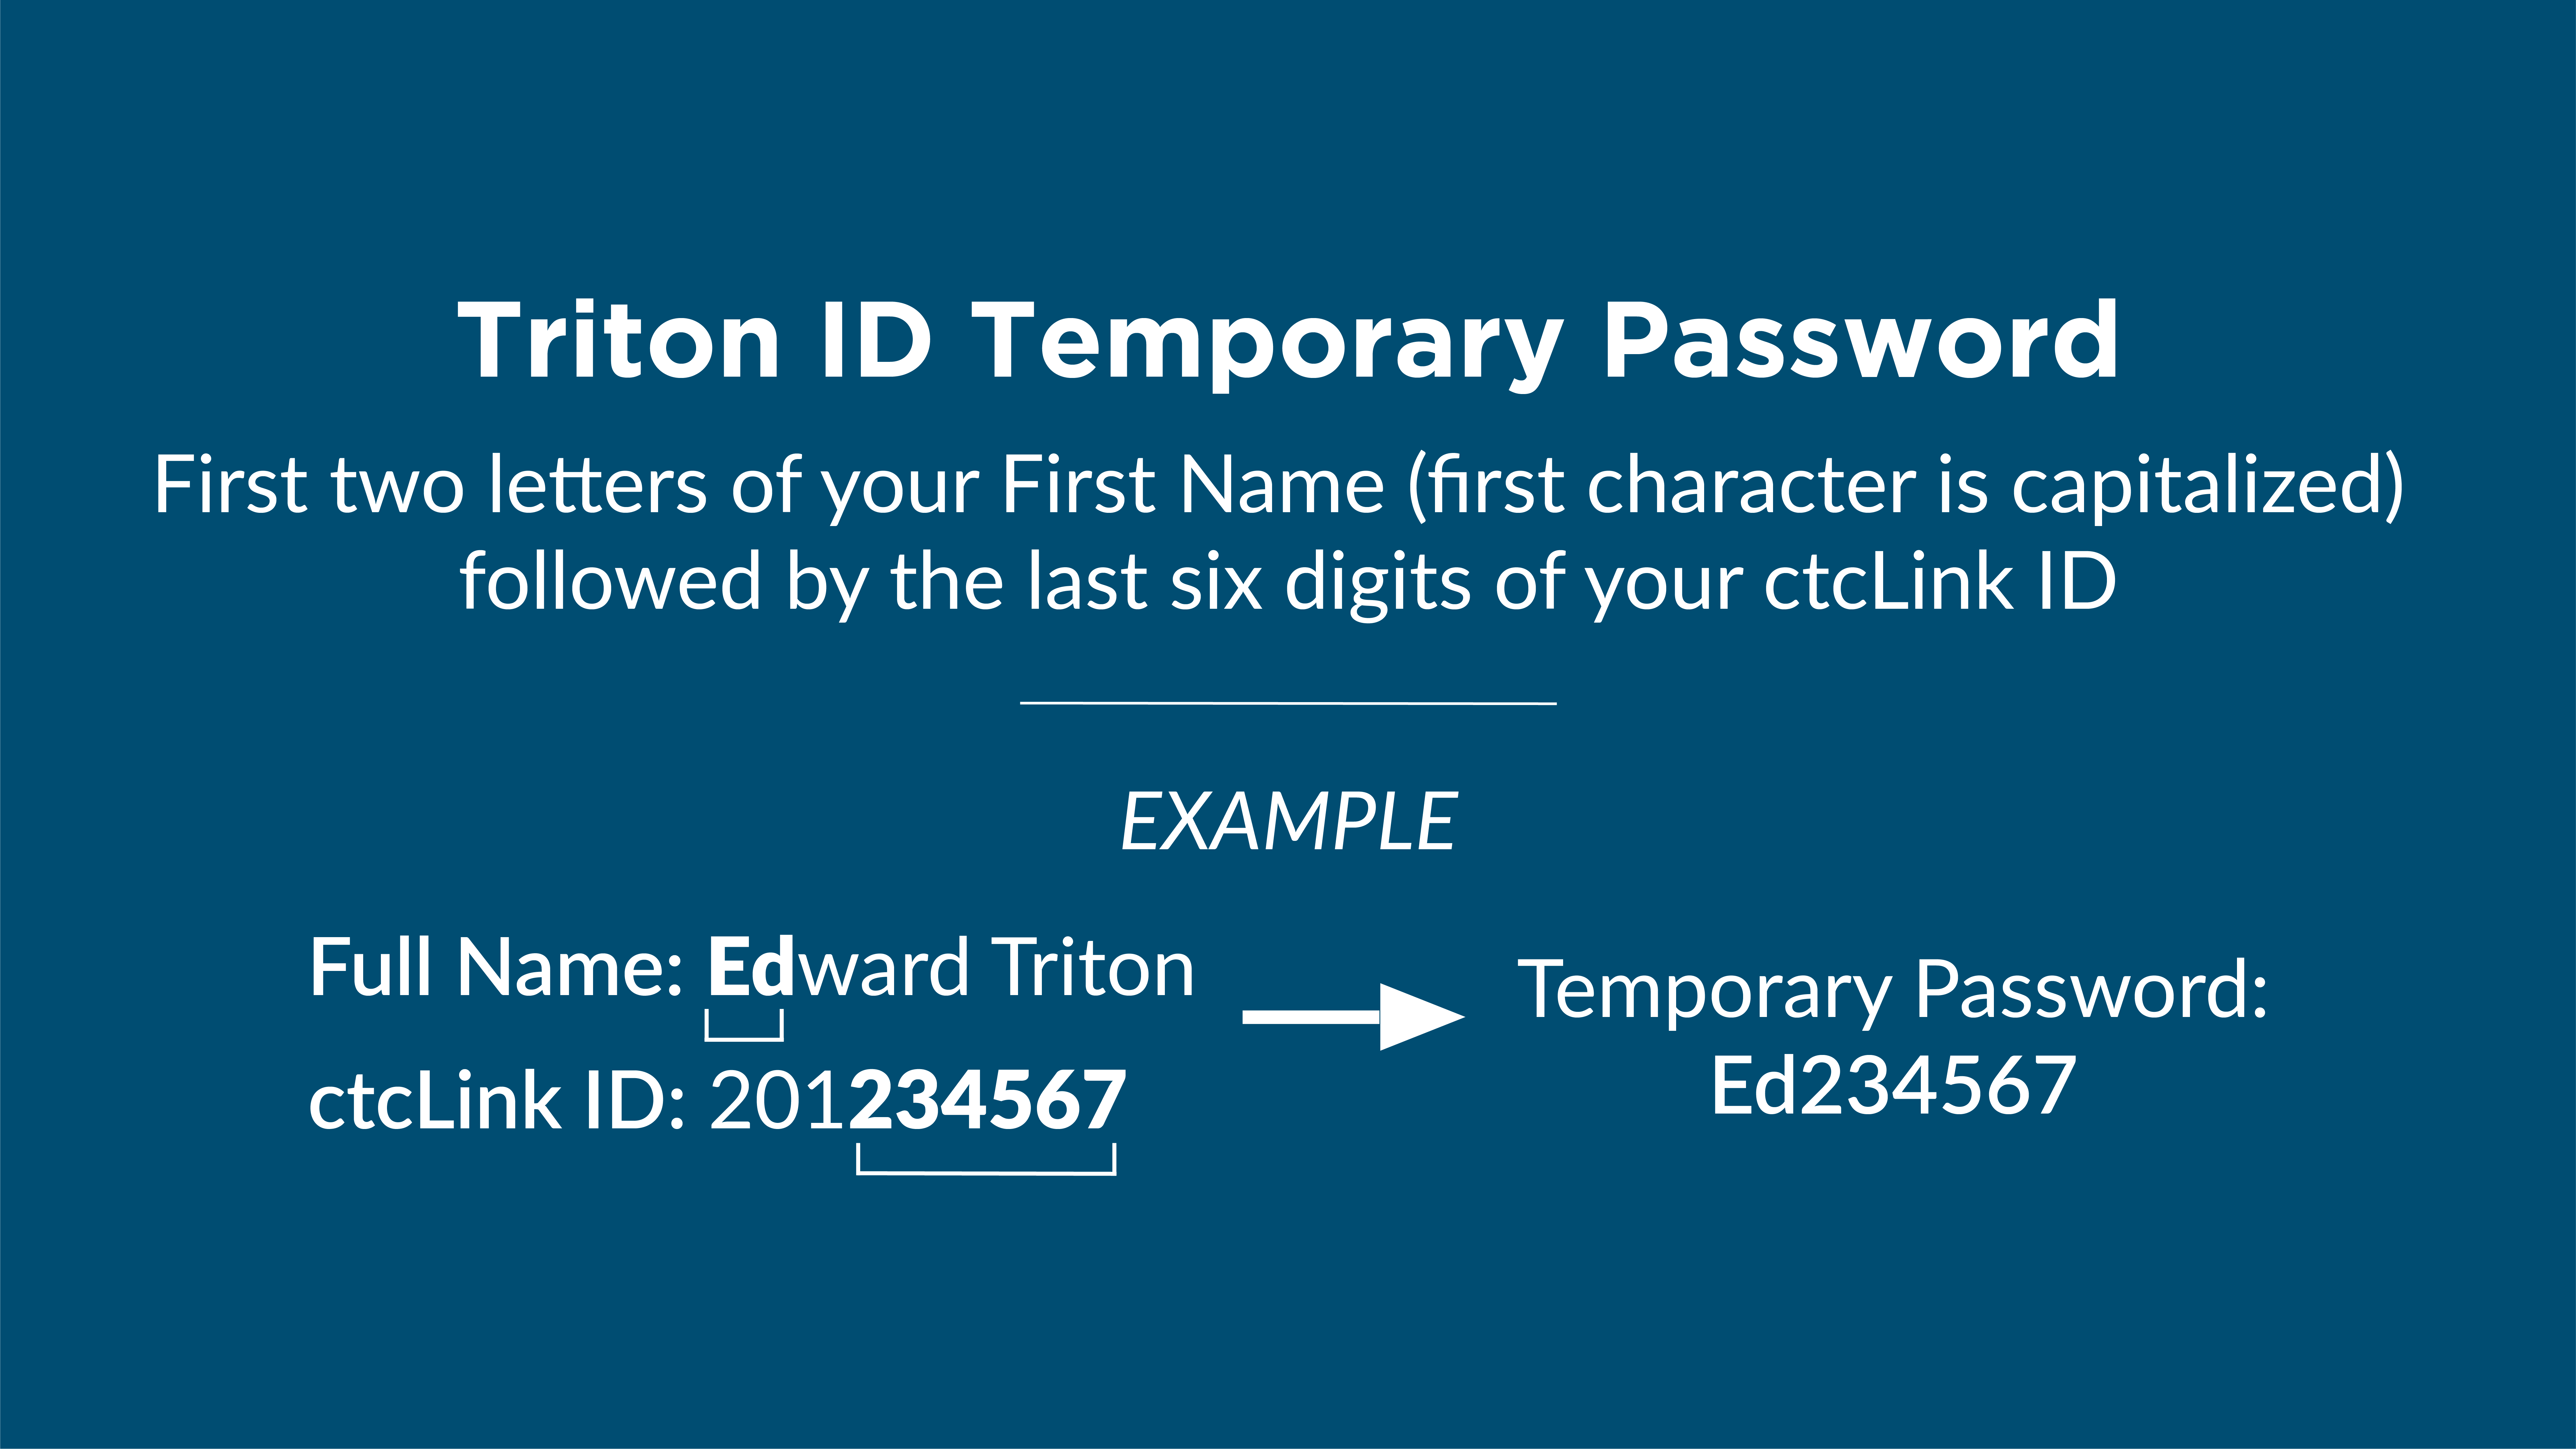 Triton ID Temporary Password